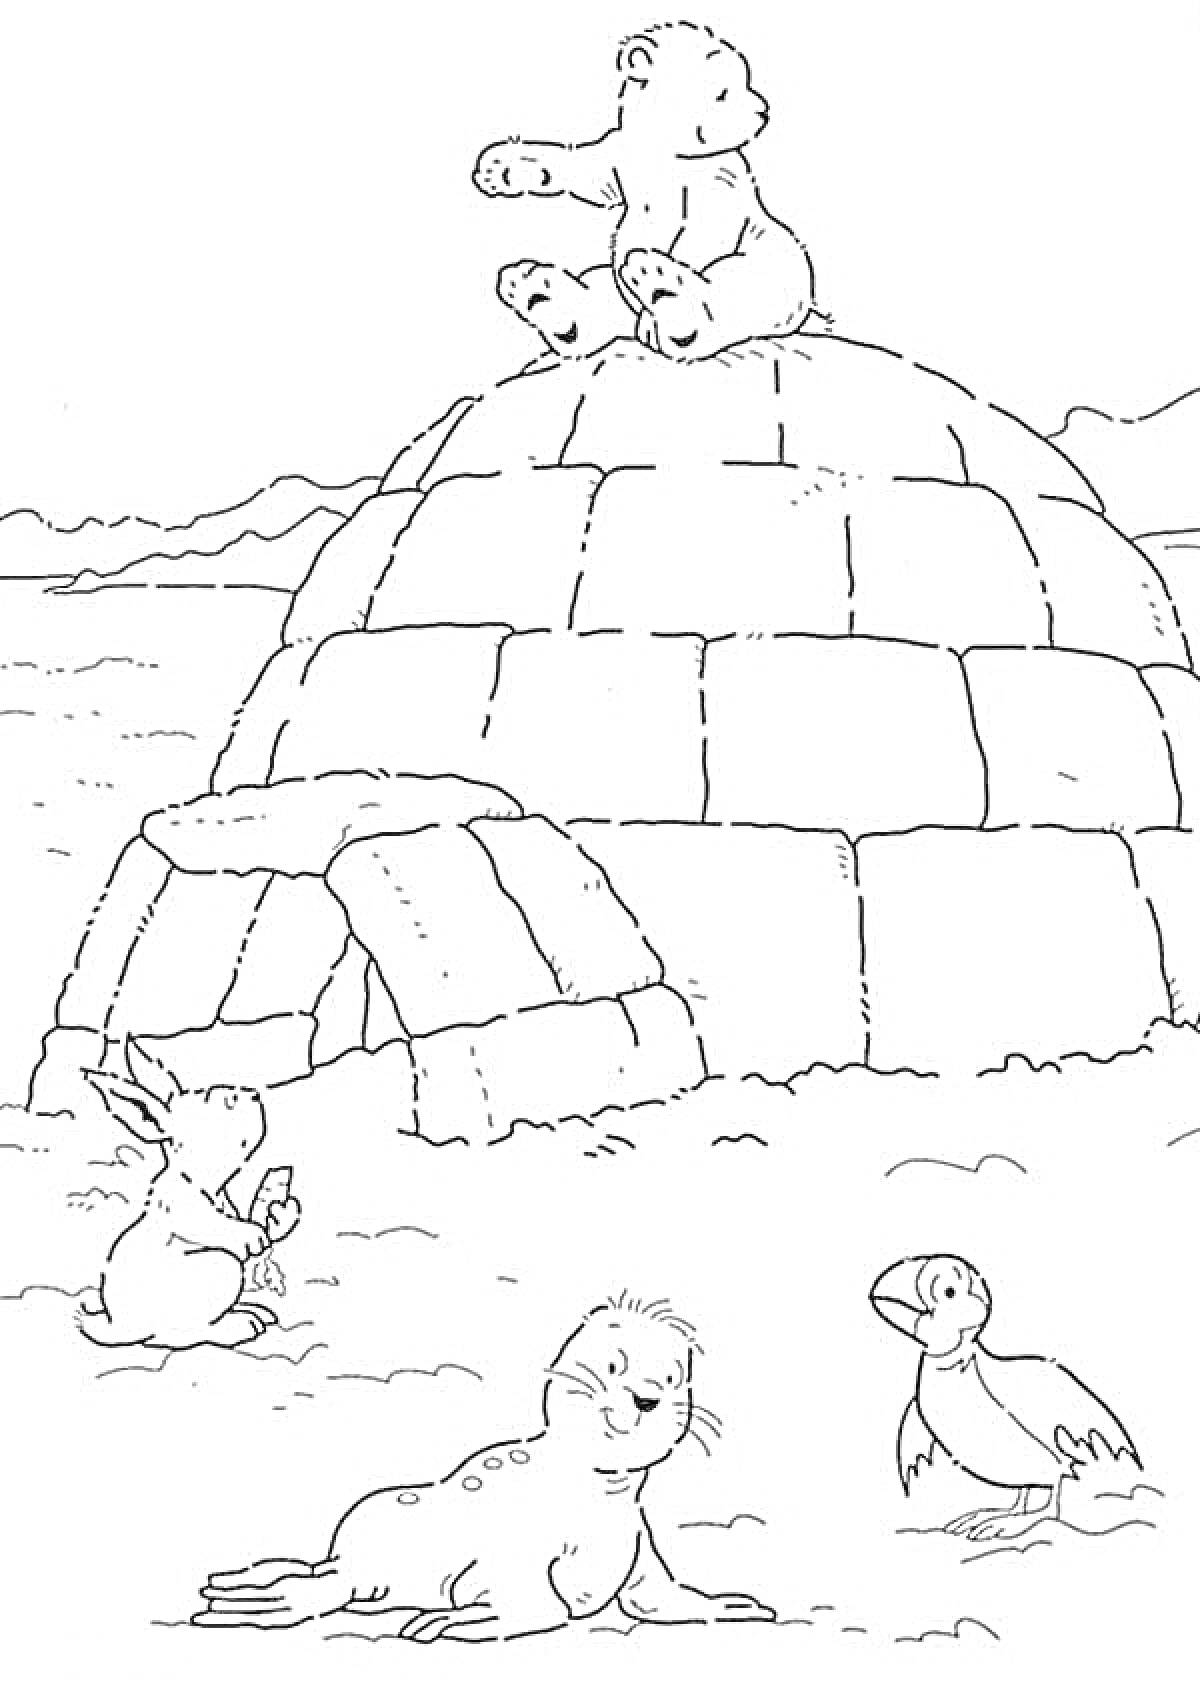 На раскраске изображено: Север, Иглу, Заяц, Тюлень, Тупик, Снег, Лед, Арктика, Белый медведь